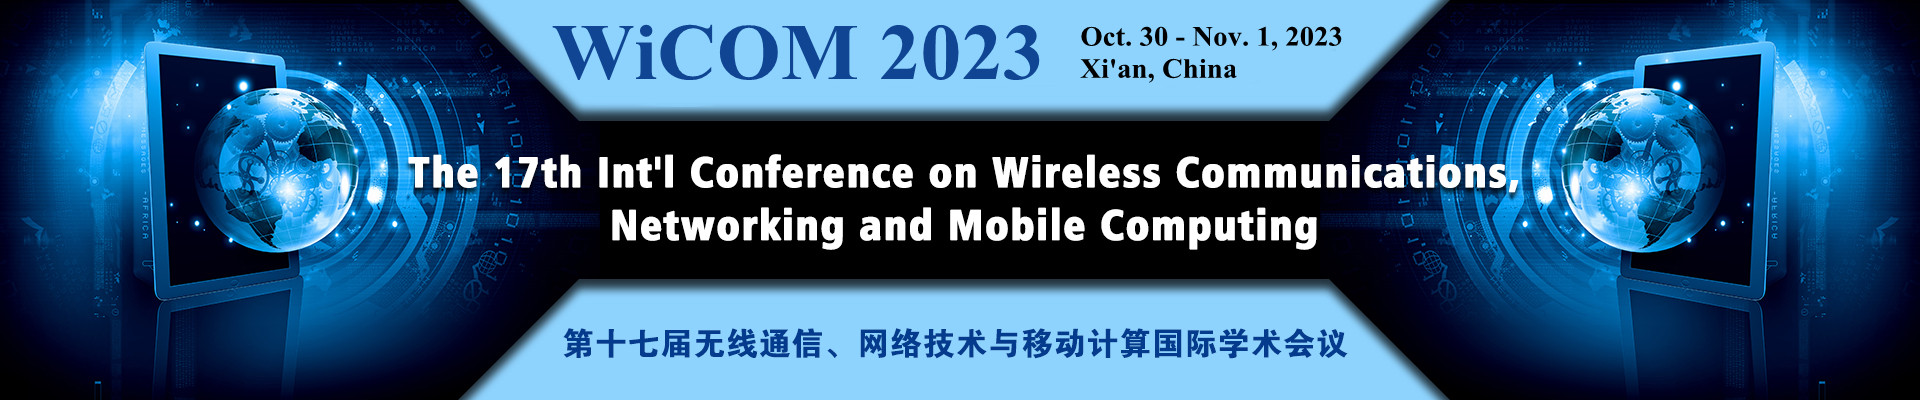 第十七屆無線通信、網絡技術與移動計算國際學術會議 (WiCOM 2023)